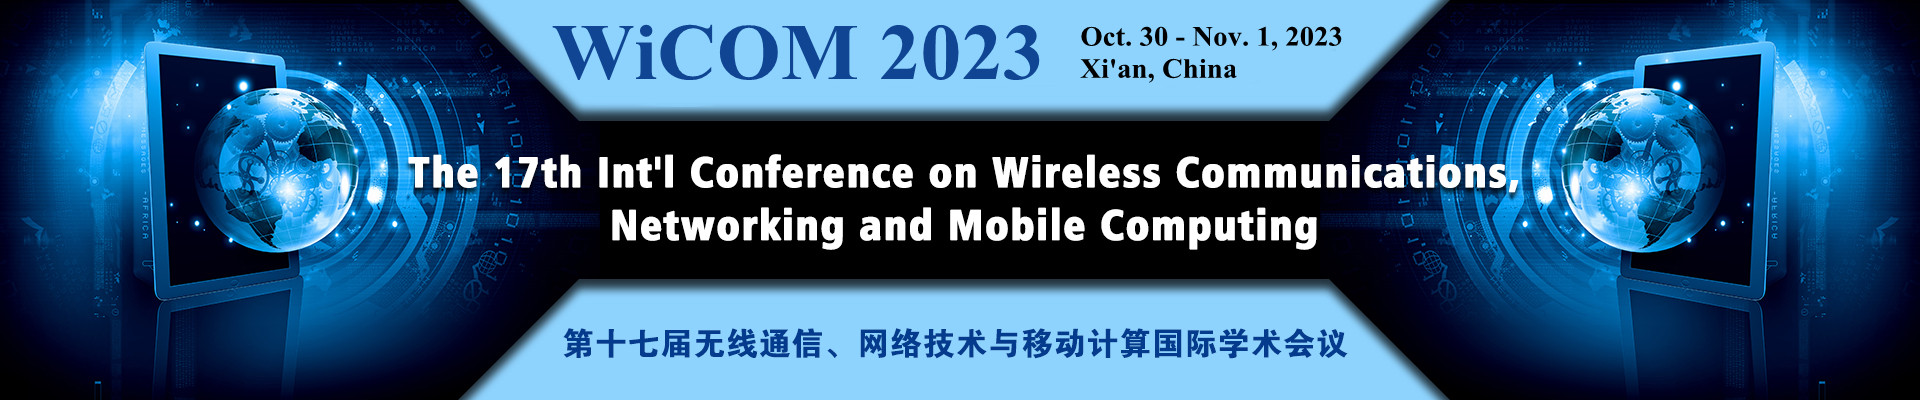 第十七屆無線通信、網絡技術與移動計算國際學術會議 (WiCOM 2023)